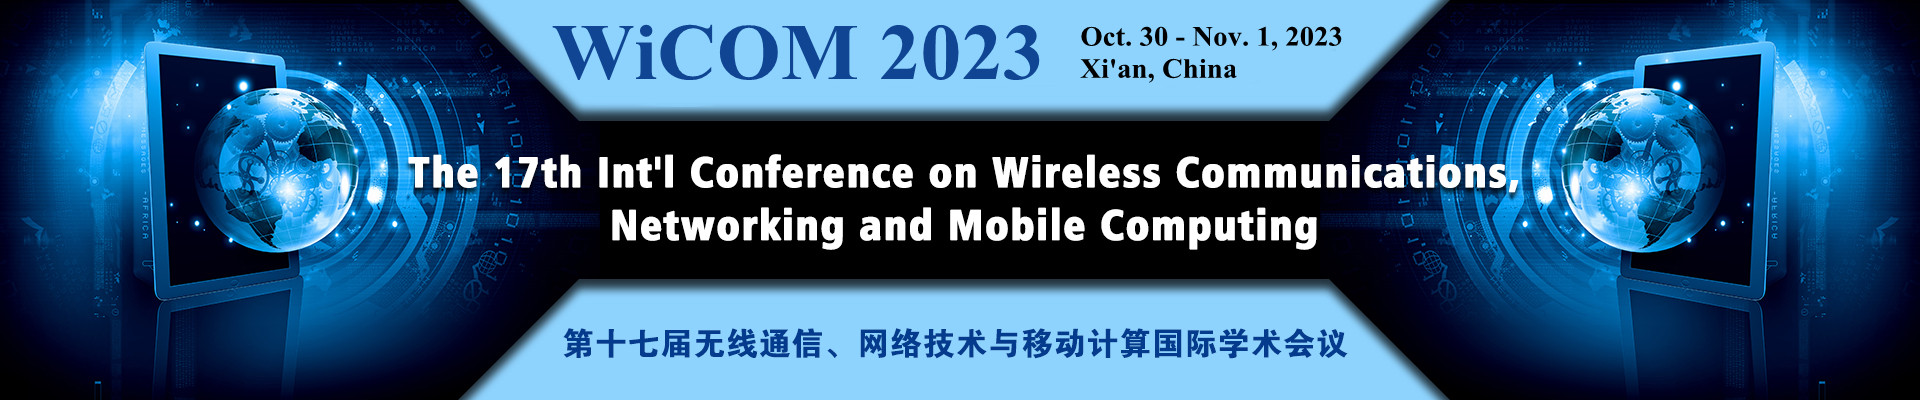 第十七屆無線通信、網絡技術與移動計算國際學術會議 (WiCOM 2023)